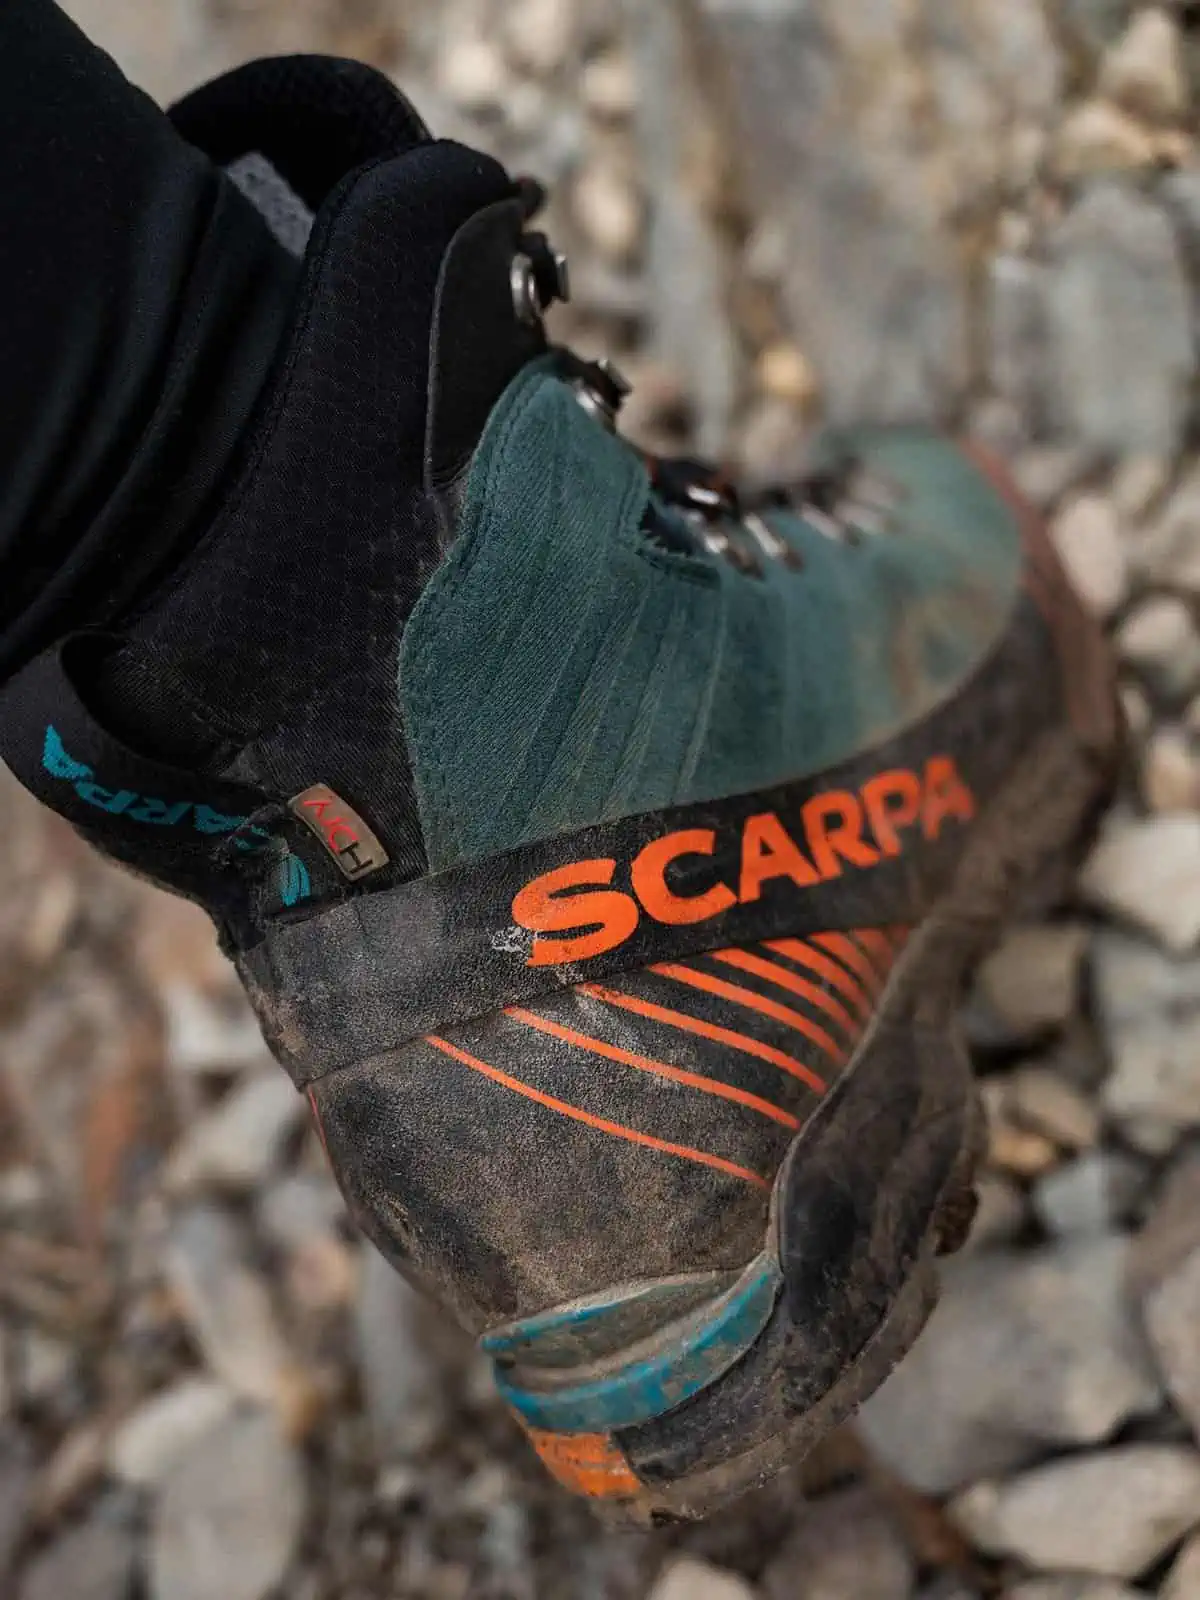 scarpa ribelle lite hd mountaineering boot waterproof